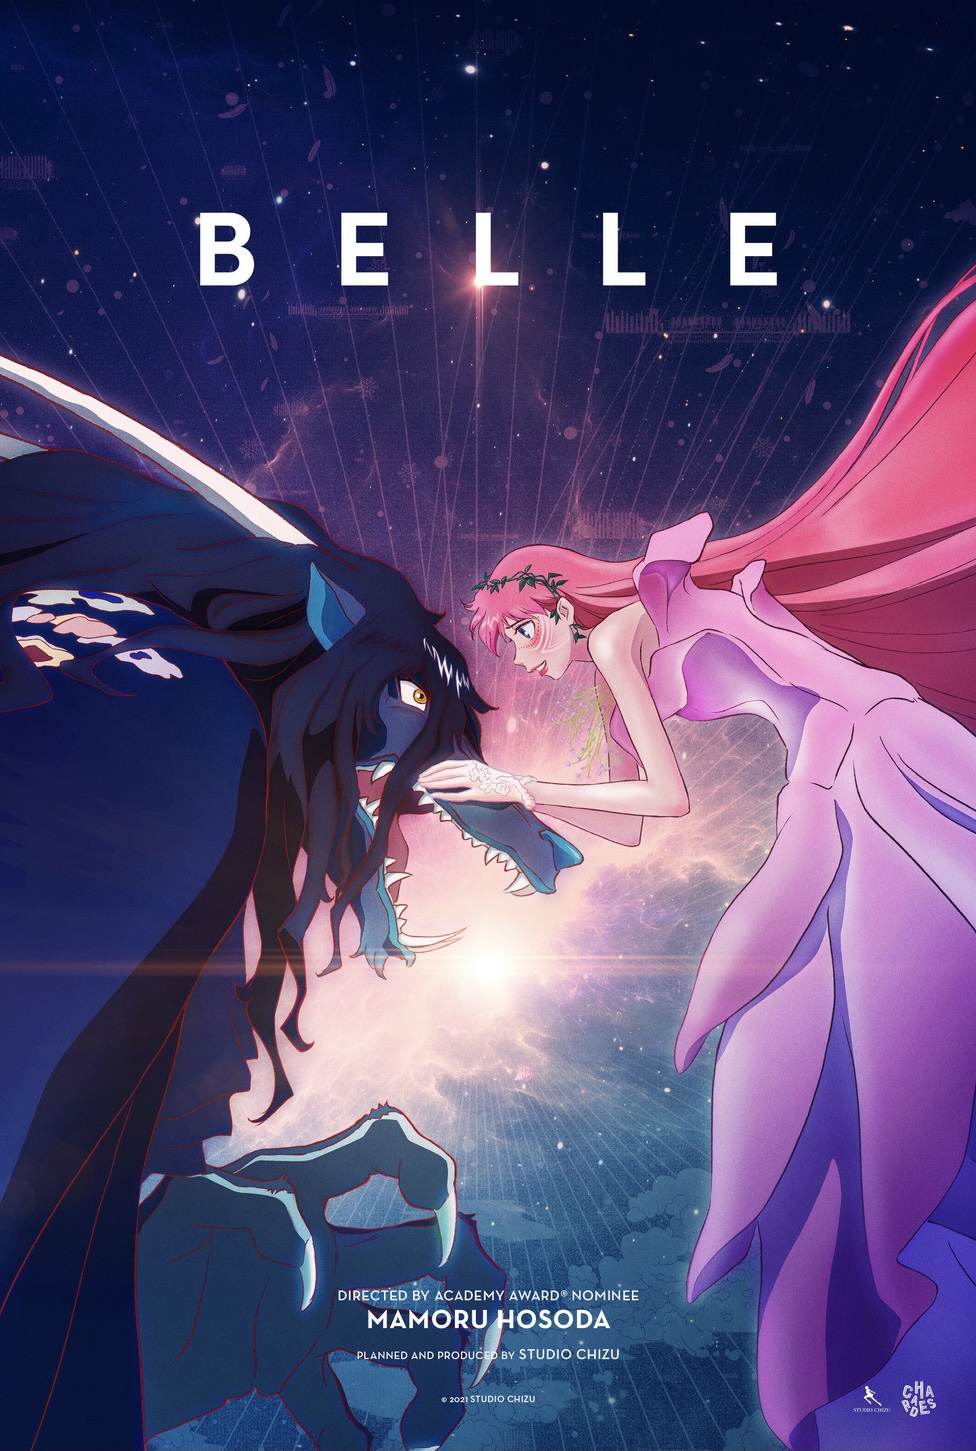 Belle Imax Poster Studio Chizu Mamoru Hosoda anime movie 12x18in 竜とそばかすの姫 |  eBay